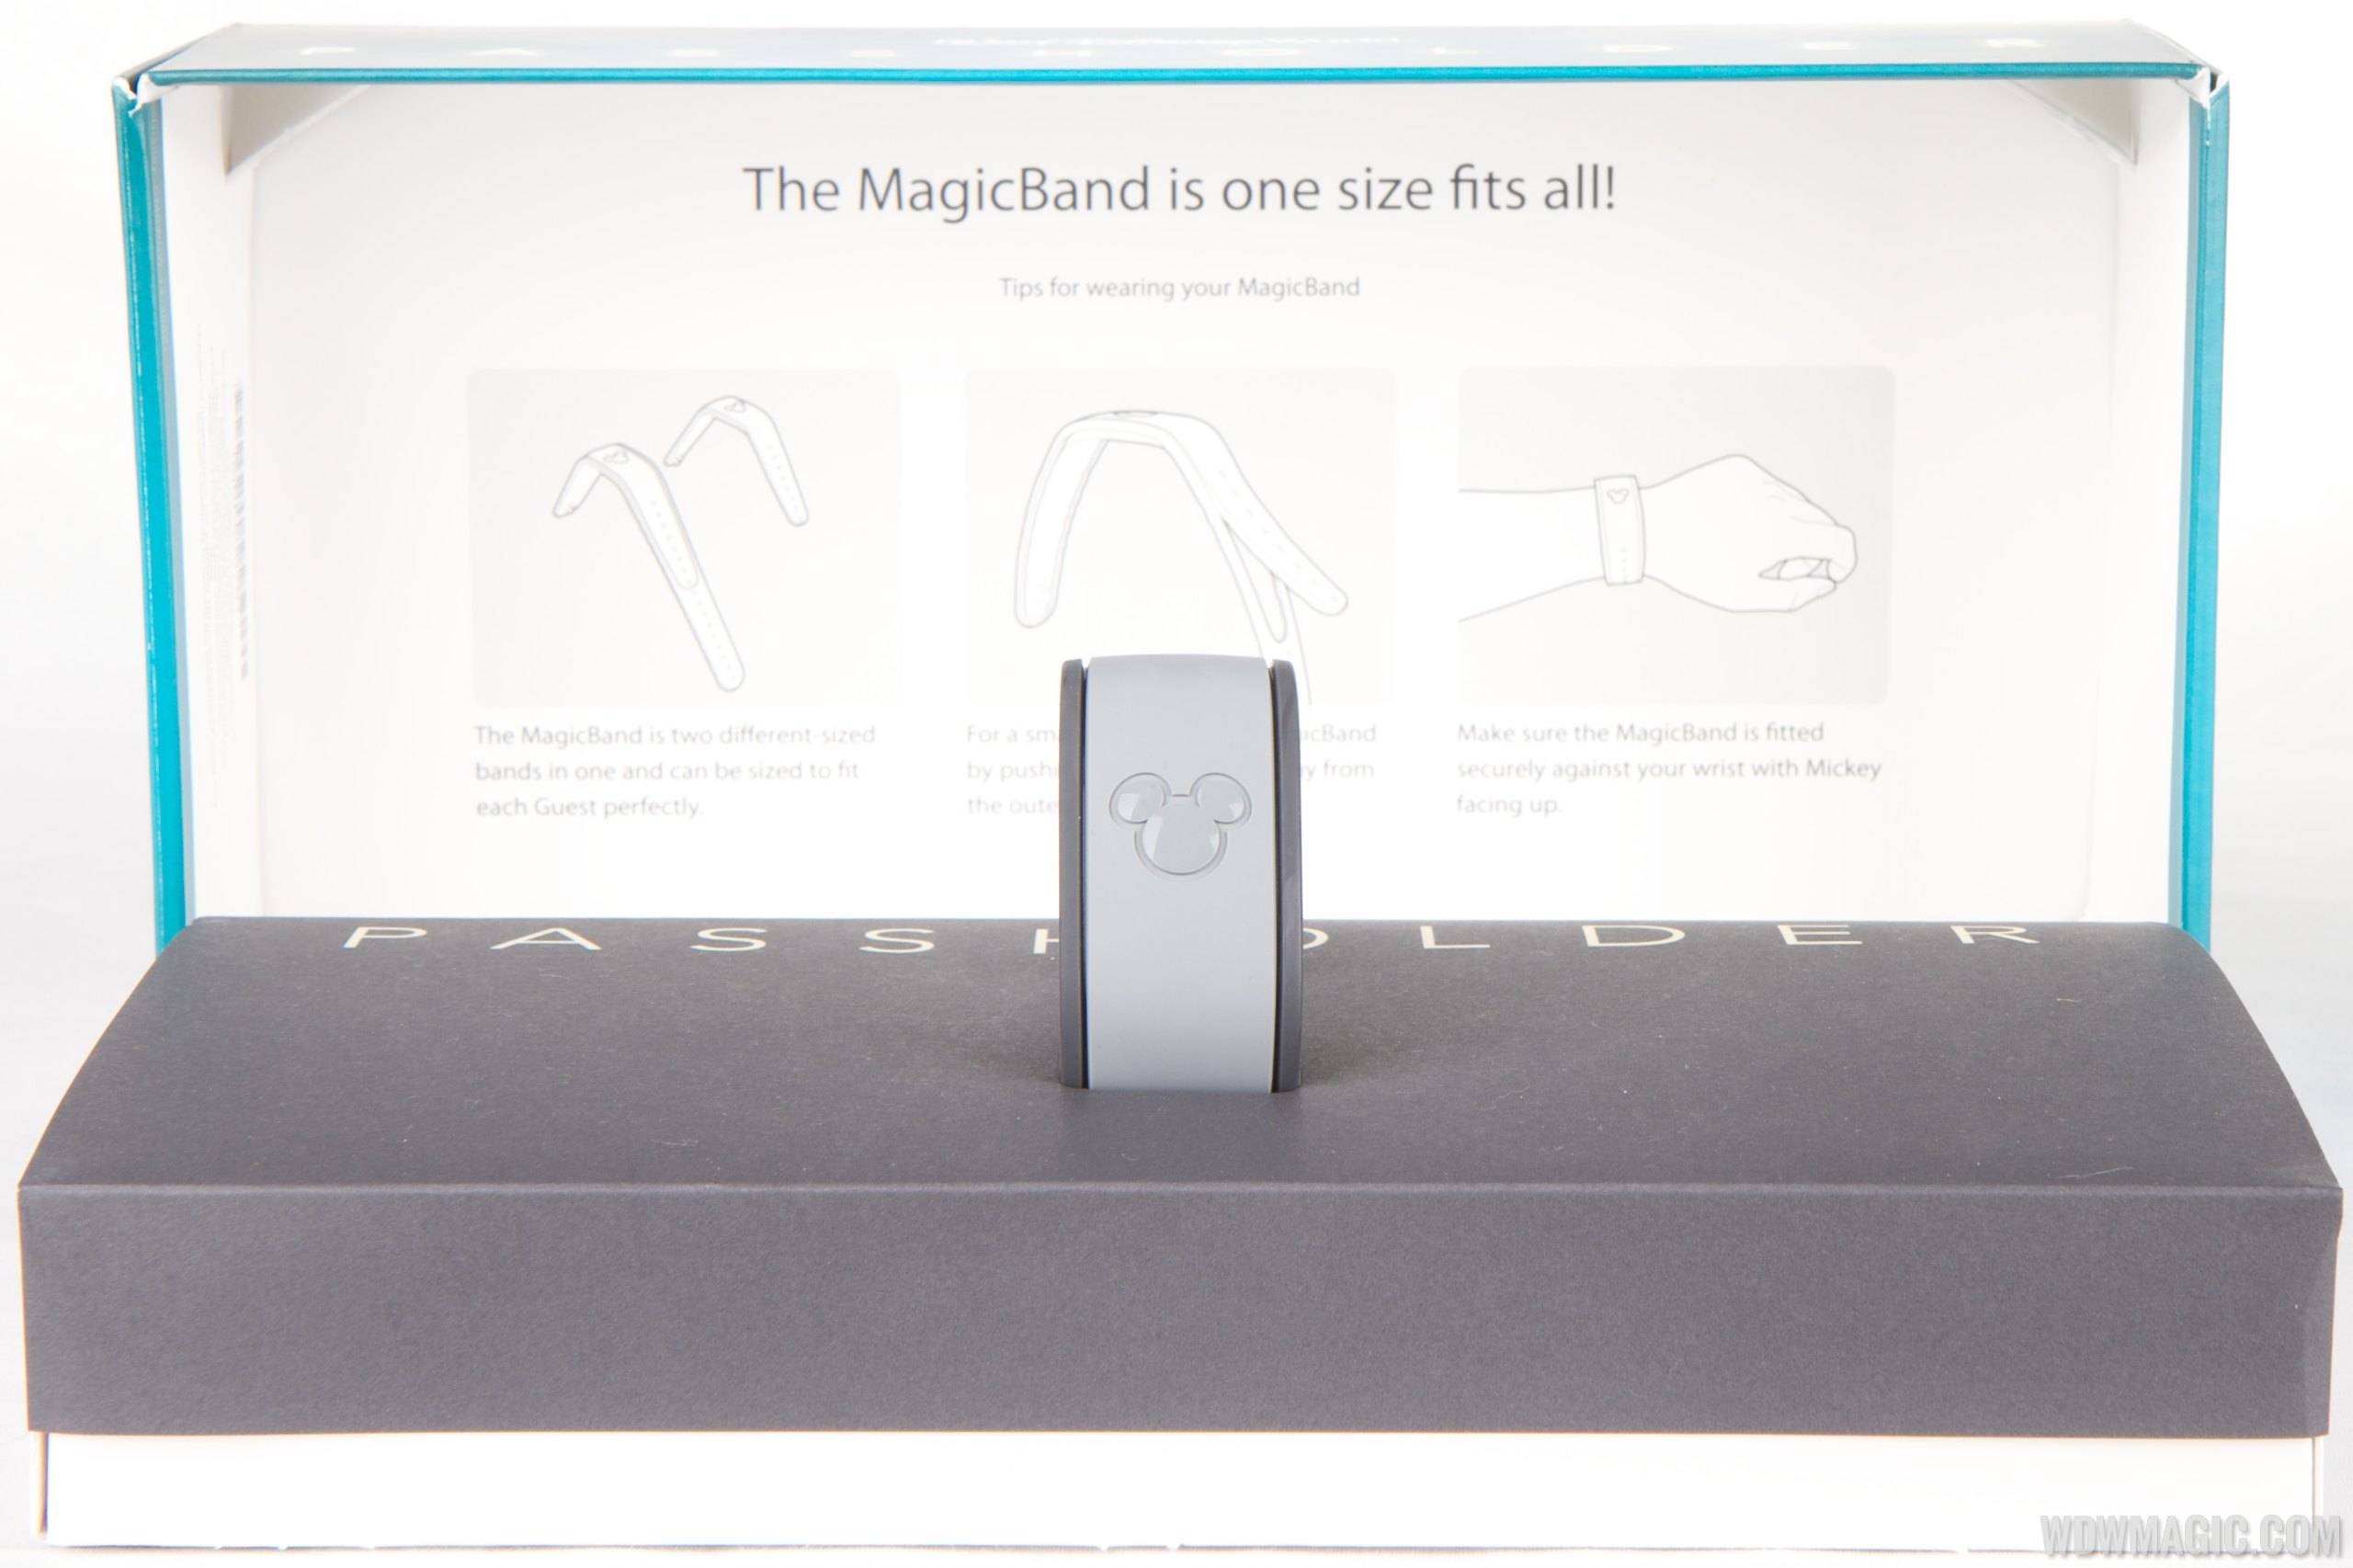 MyMagic Passholder MagicBand unboxing